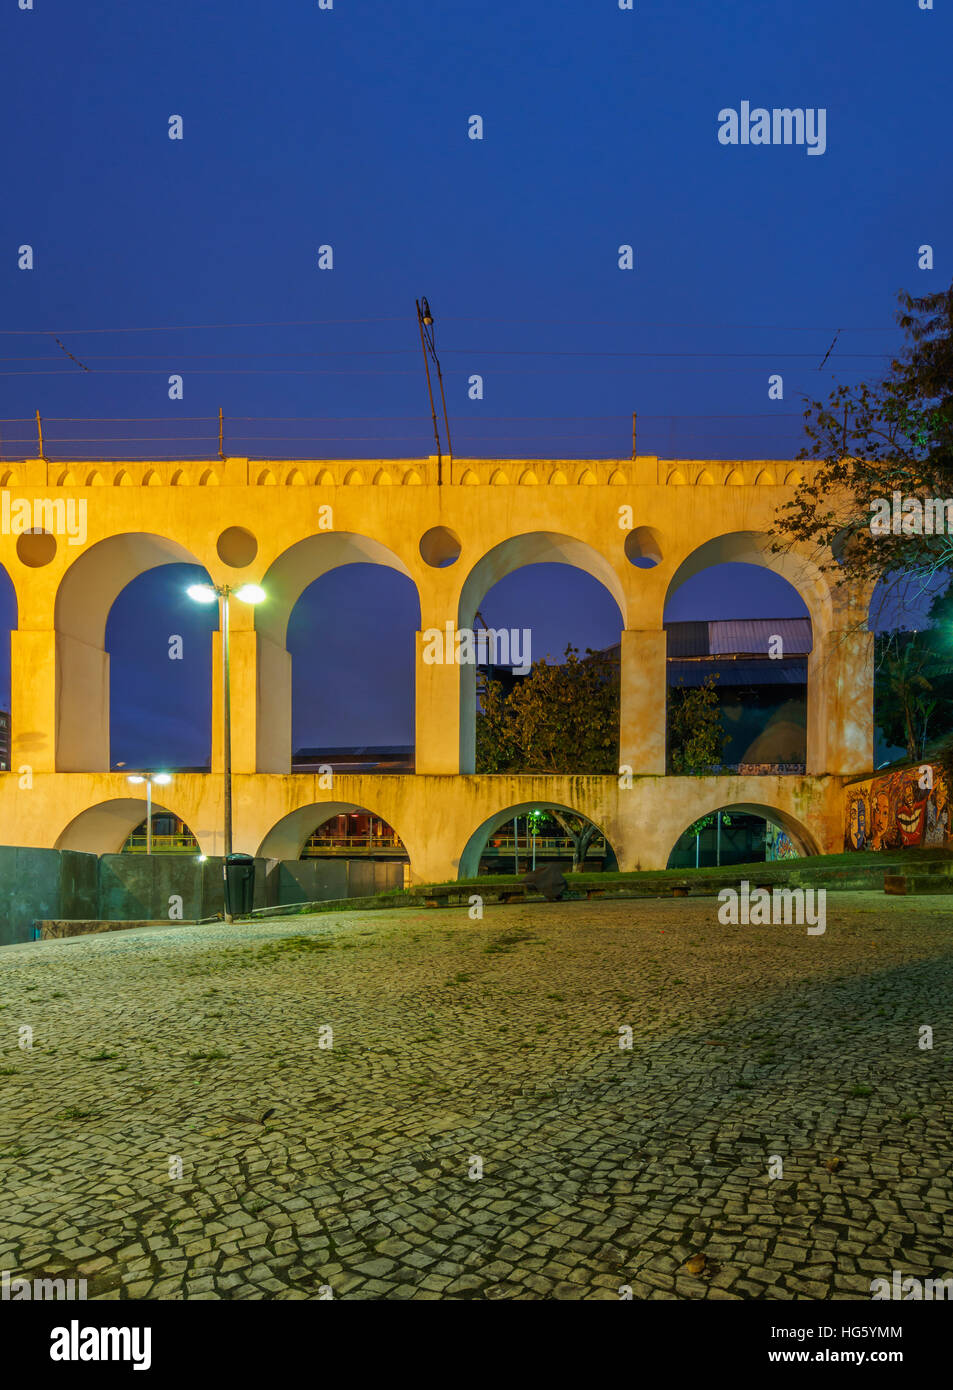 Brazil, City of Rio de Janeiro, Lapa, Twilight view of The Carioca Aqueduct. Stock Photo